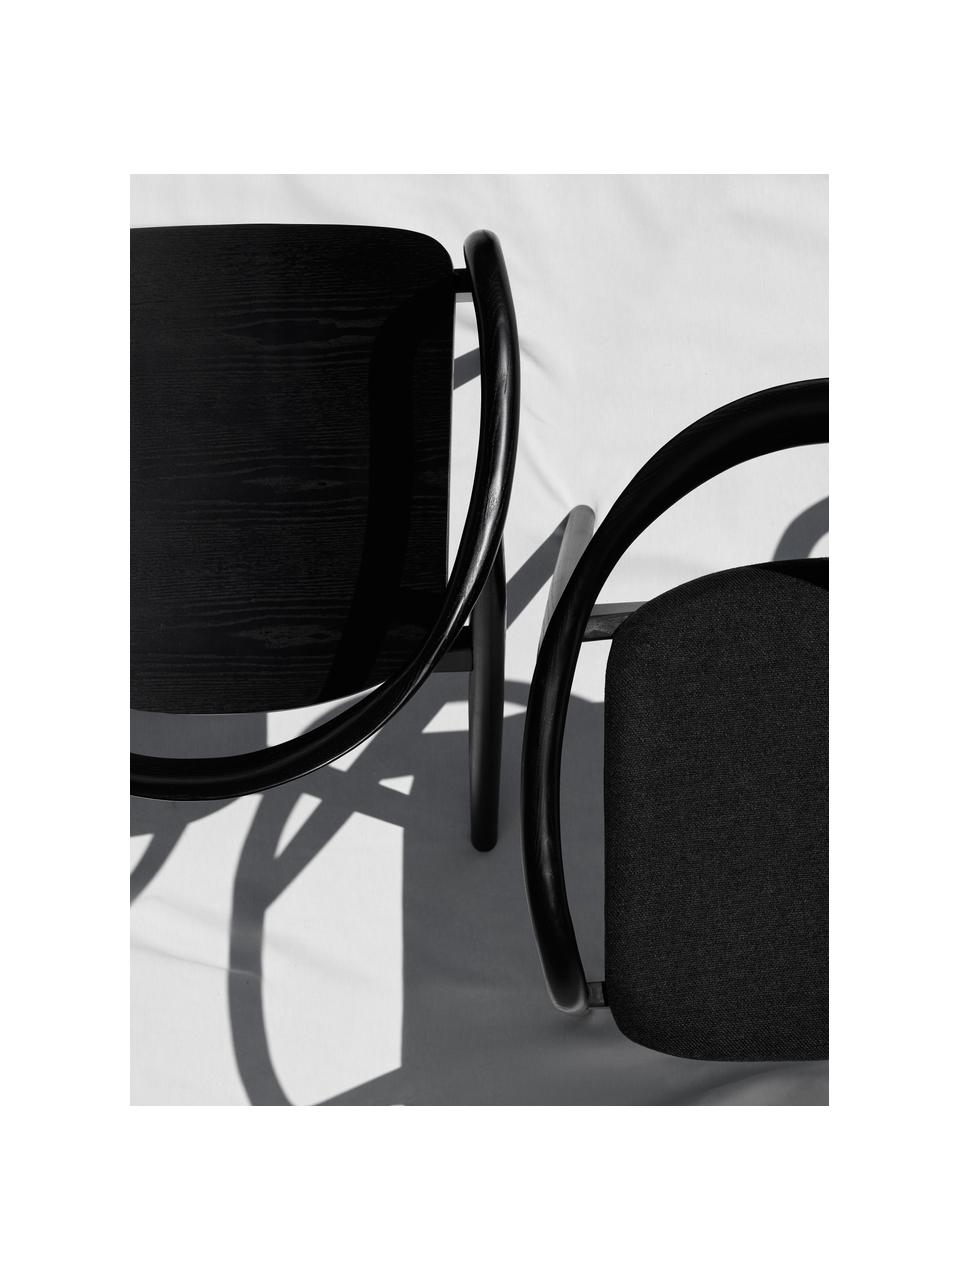 Chaise en bois avec coussin d'assise Angelina, Tissu noir, noir, larg. 57 x haut. 80 cm